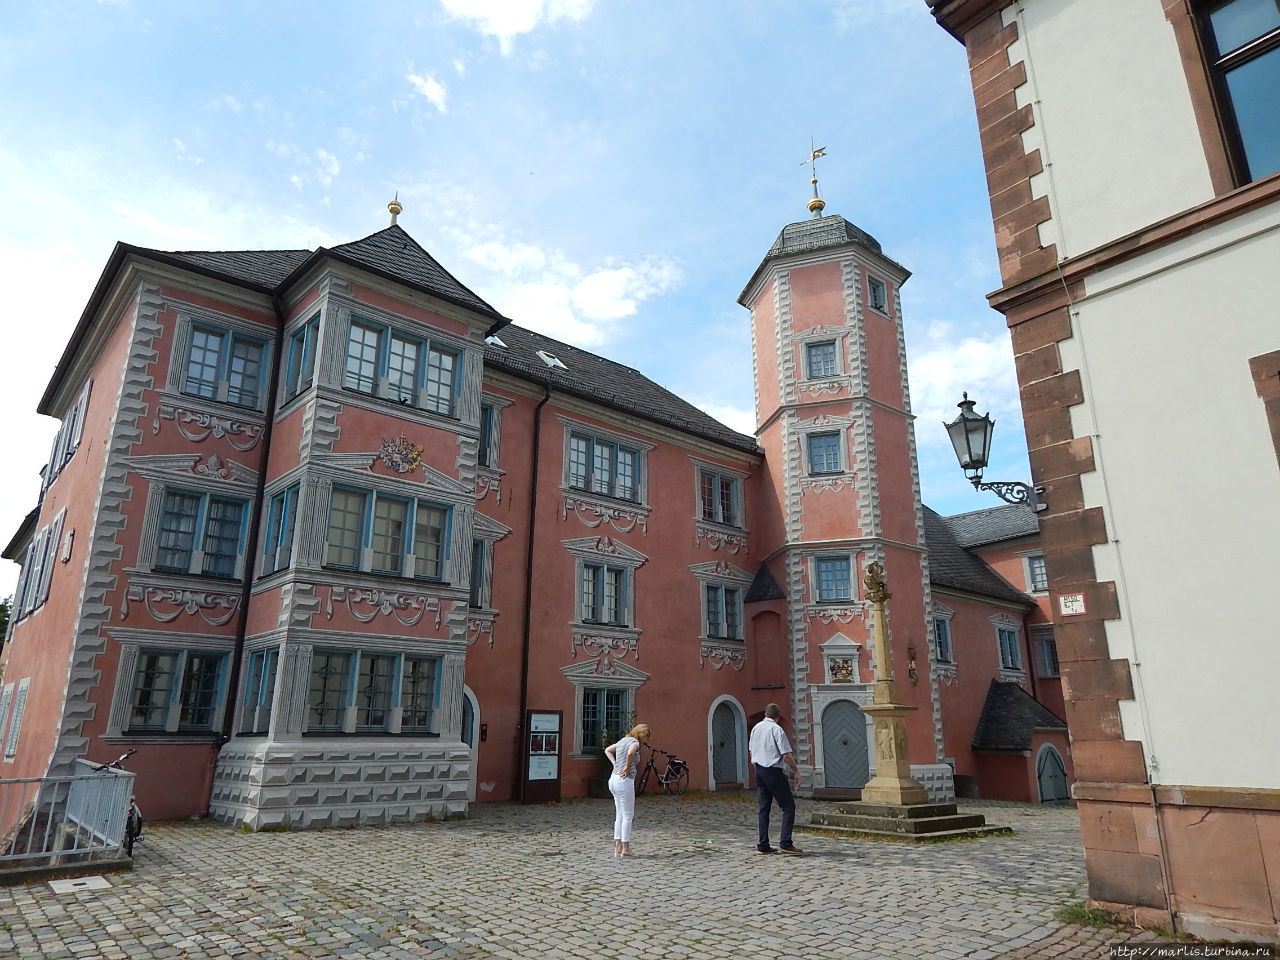 Резиденция епископов, ныне краеведческий музей, Lobdengau-Museum. Во дворе музея можно увидеть копию римской колонны Юпитера. Ладенбург, Германия